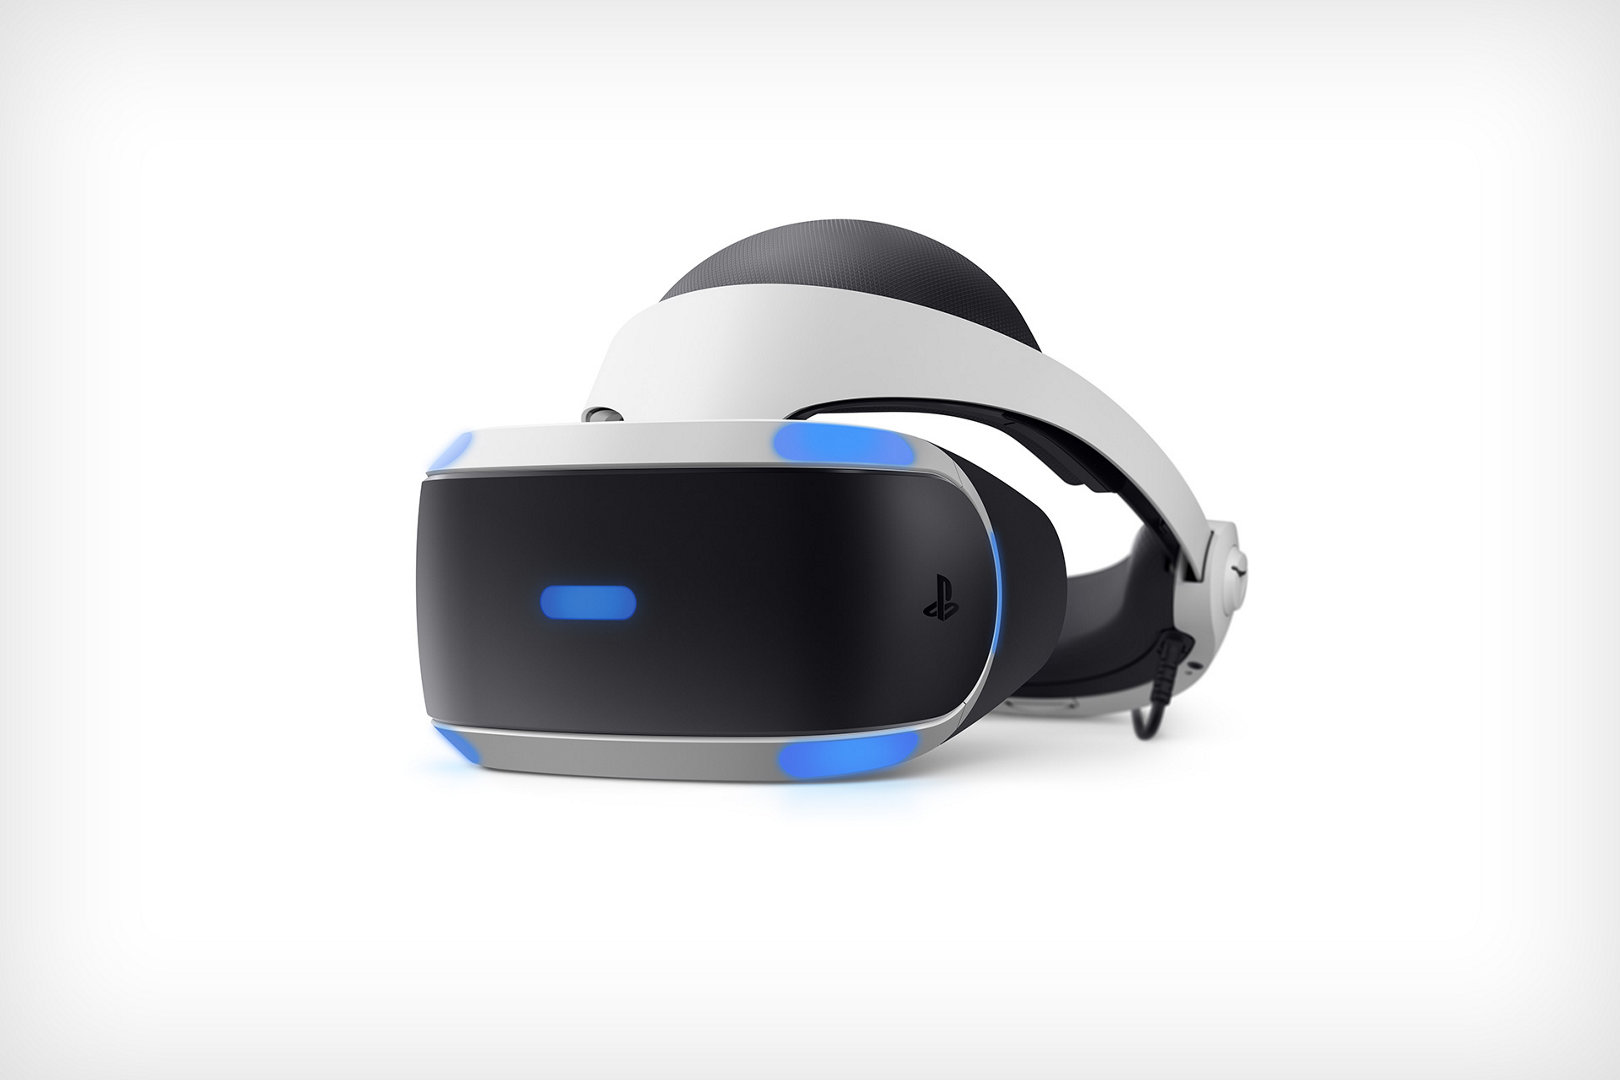 Sony PlayStation VR Шлем V2 виртуальной реальности купить Москве в по цене 27840 руб. -